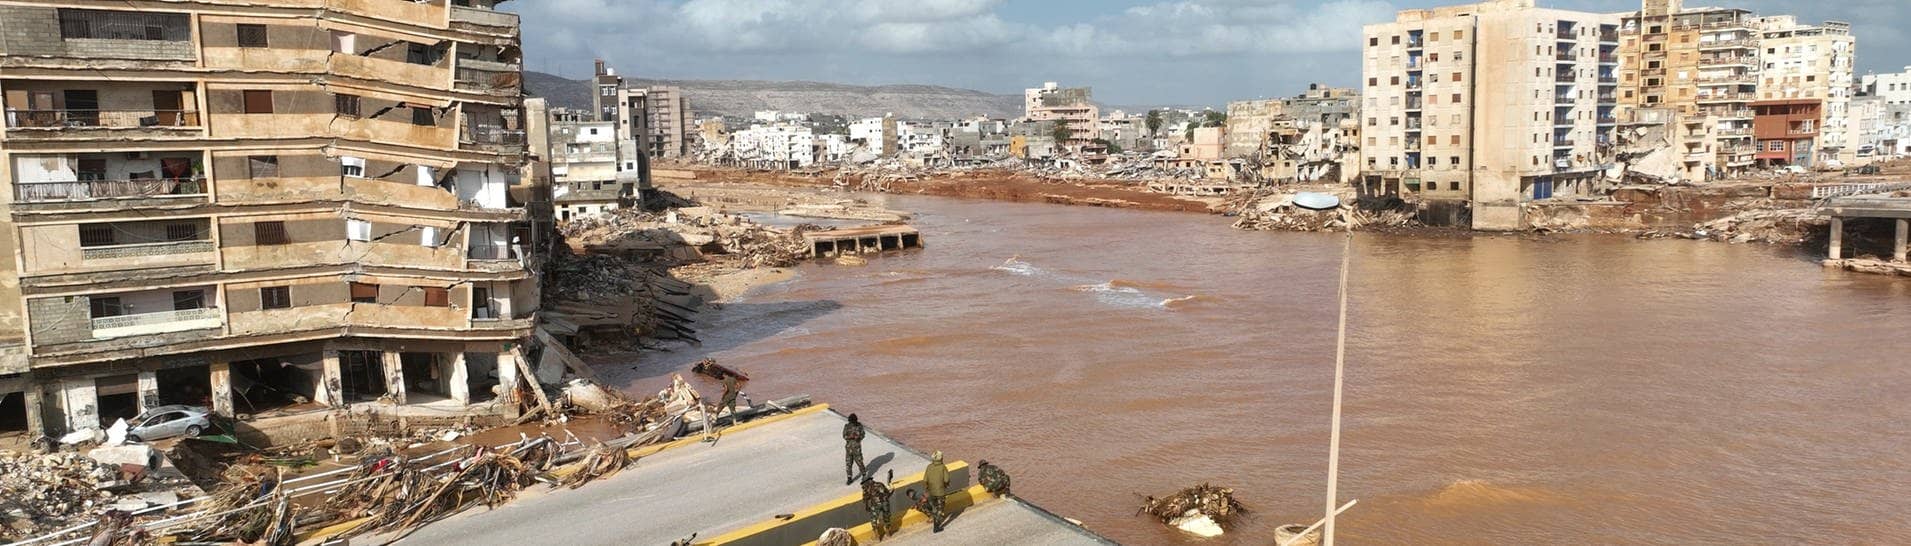 Straßen in Derna sind nach Überschwemmungen zerstört. Ein heftiges Unwetter hat im Bürgerkriegsland Libyen schwere Verwüstungen angerichtet. 